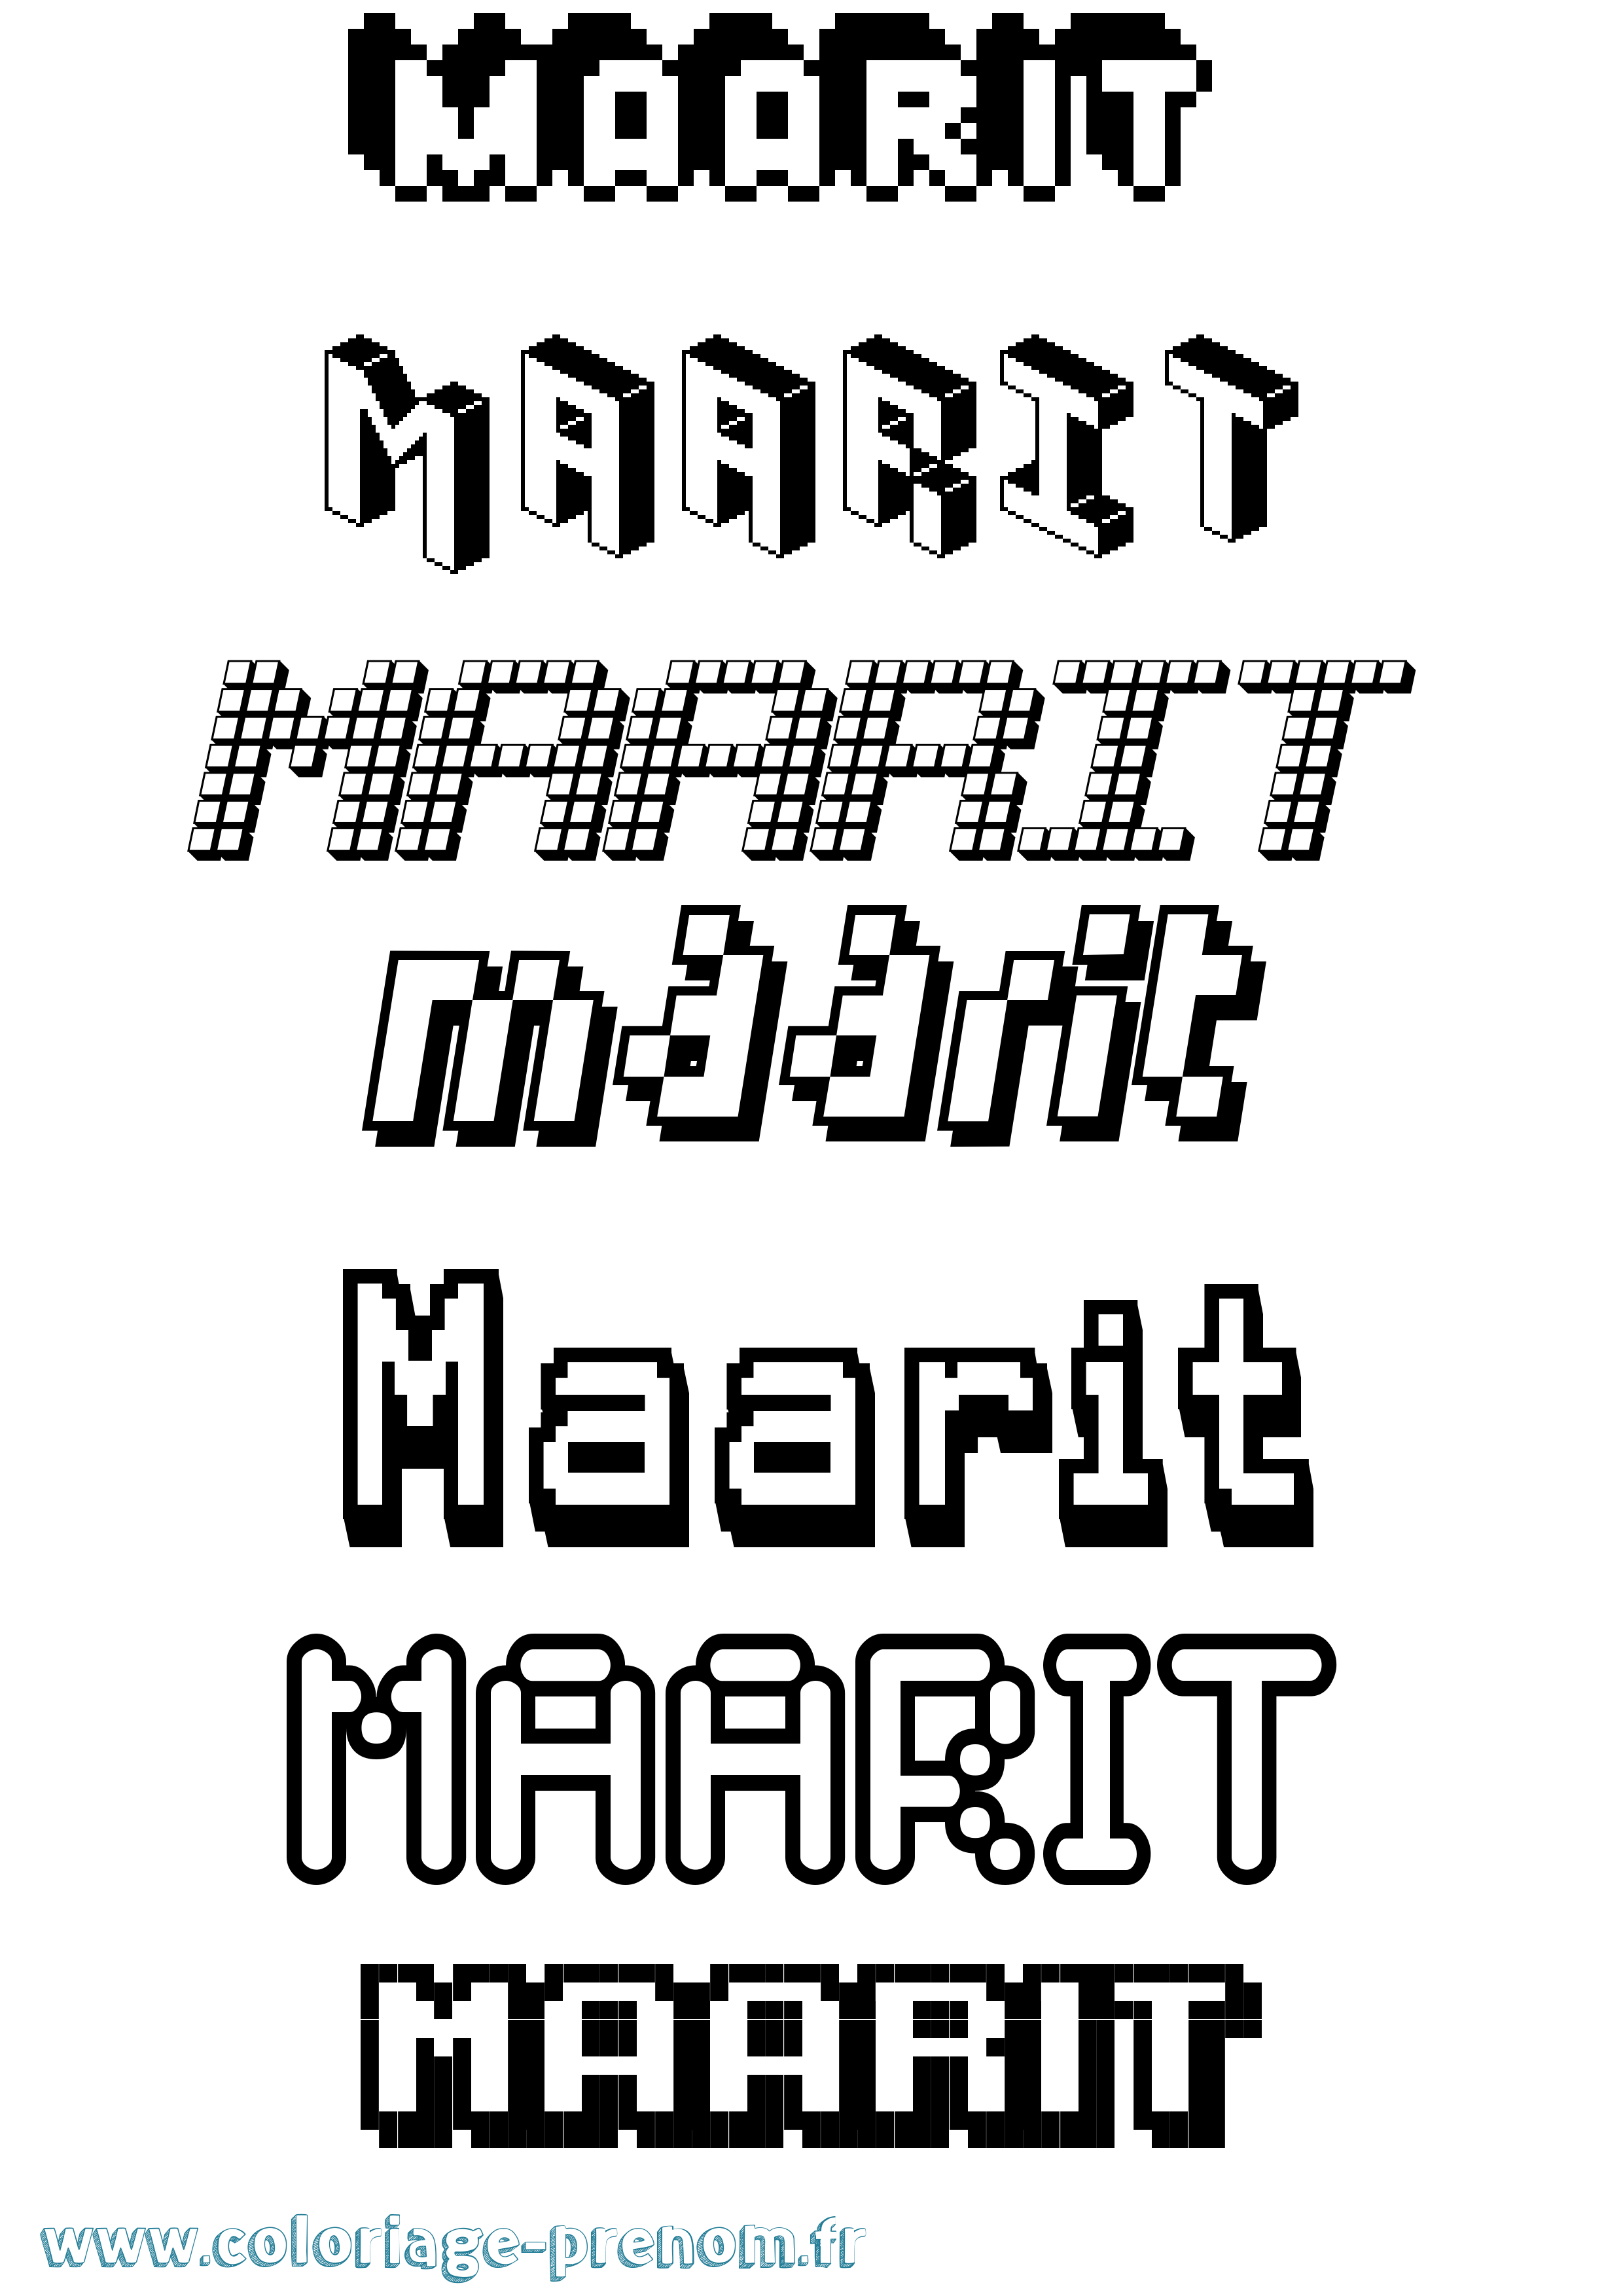 Coloriage prénom Maarit Pixel